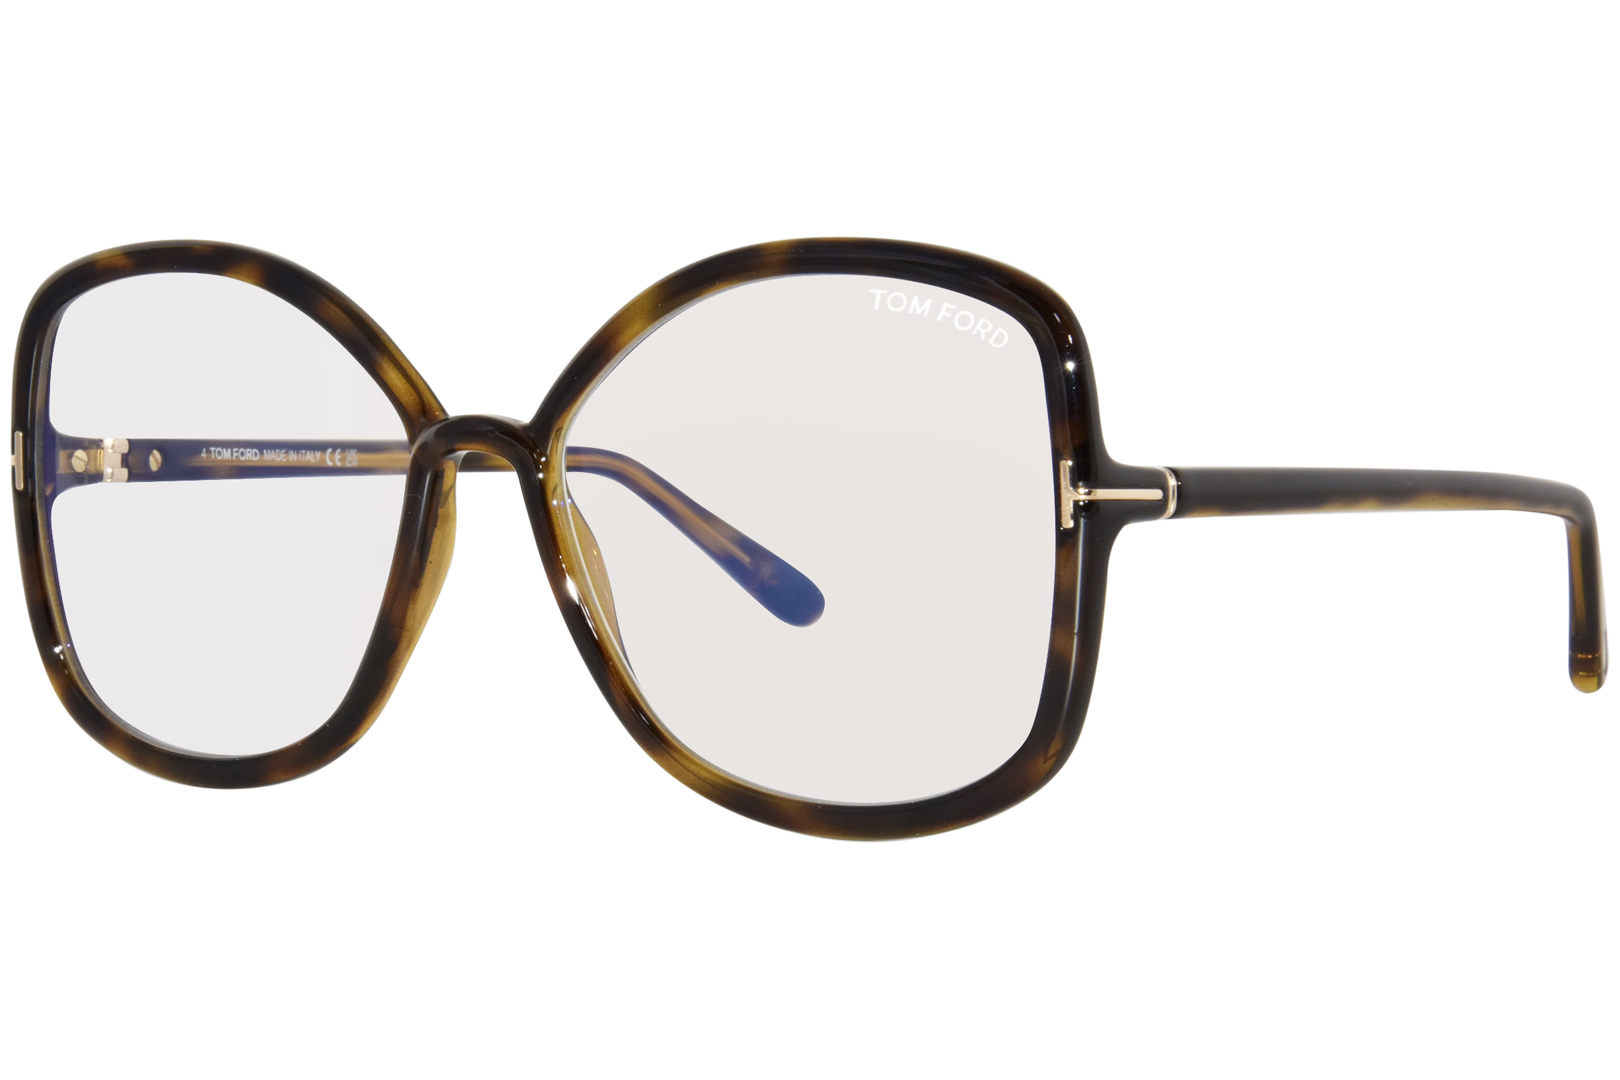 Tom Ford TF5845-B Eyeglasses Women's Full Rim Butterfly Shape ...